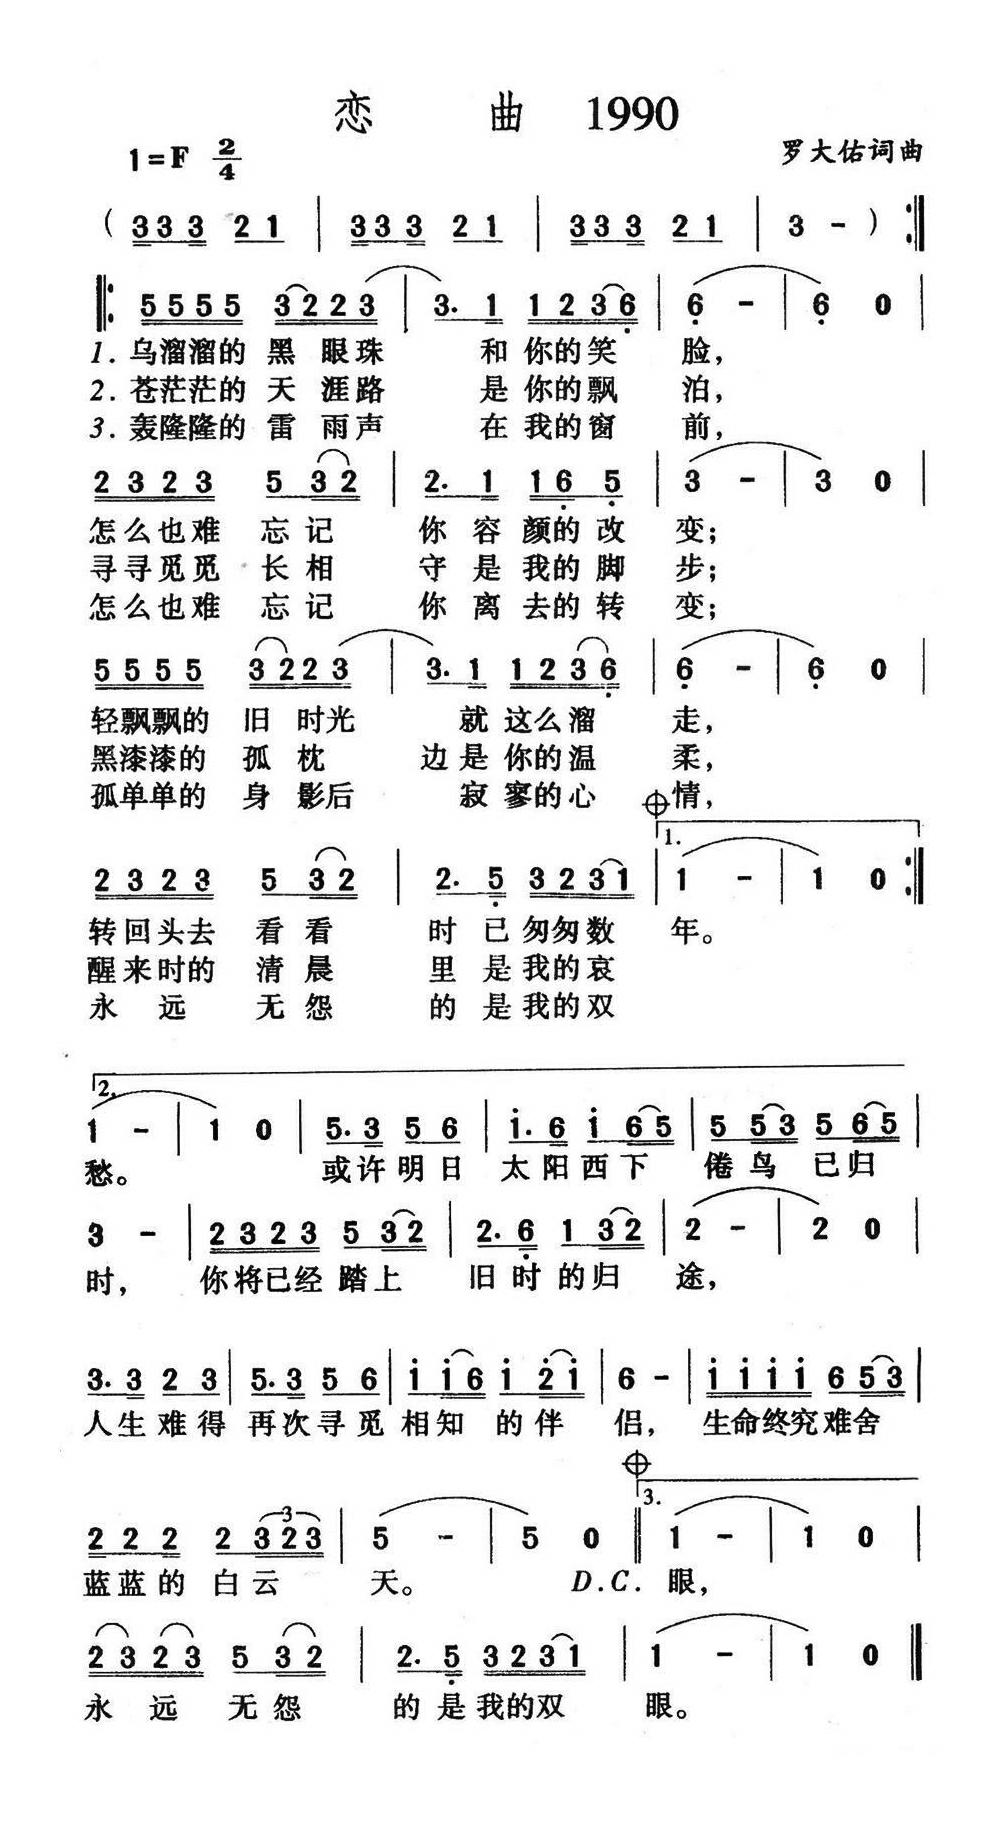 恋曲1990 (1)高清手机移动歌谱简谱